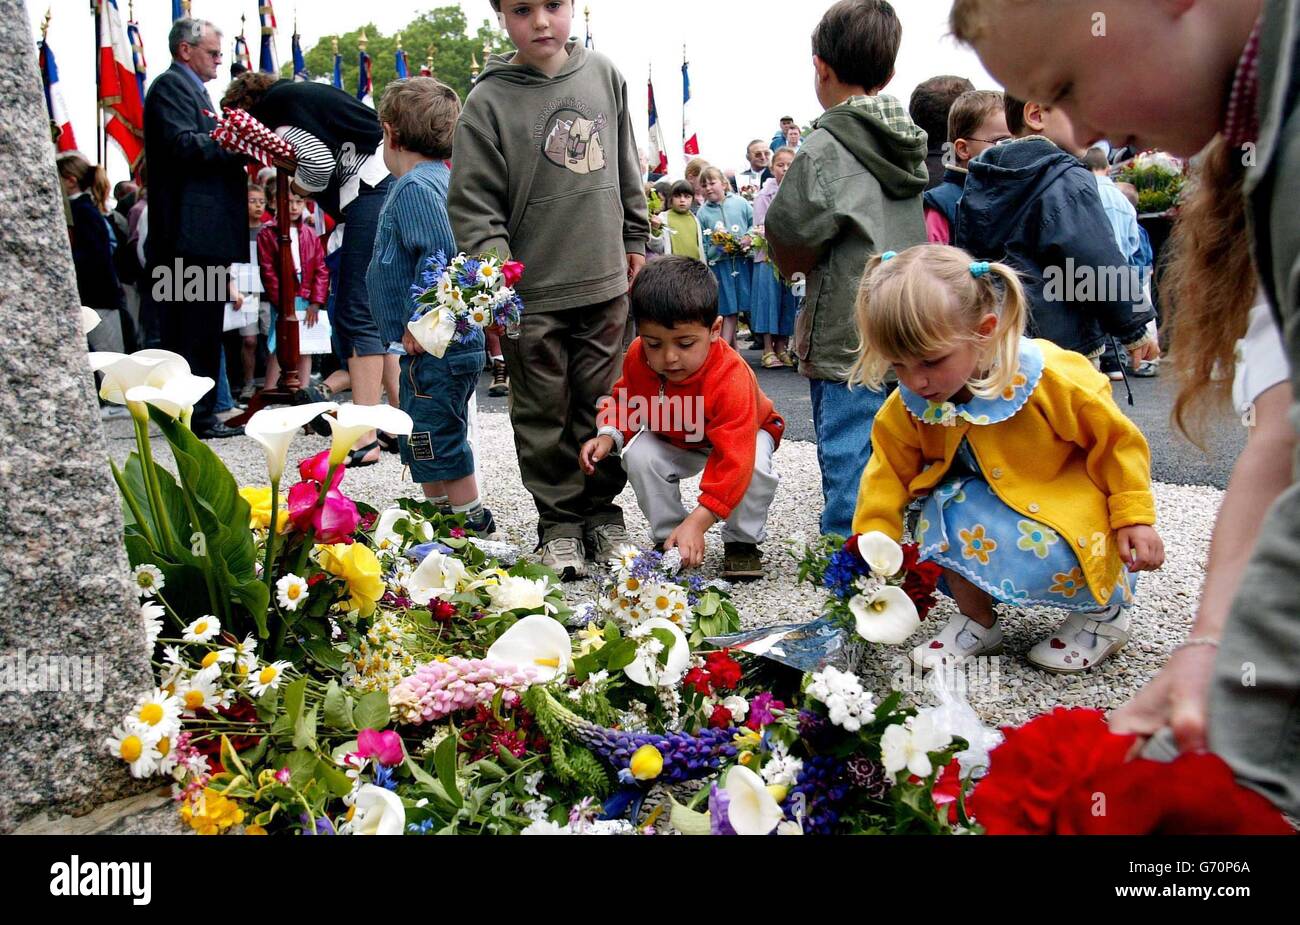 Gli studenti francesi di Magneville in Normandia posano fiori in un memoriale nel loro villaggio ai soldati della 101esima Divisione aerea americana che sono stati abbattuti il D-Day. Questo fine settimana si svolgono eventi in occasione del 60° anniversario dell'invasione alleata dell'Europa. Foto Stock